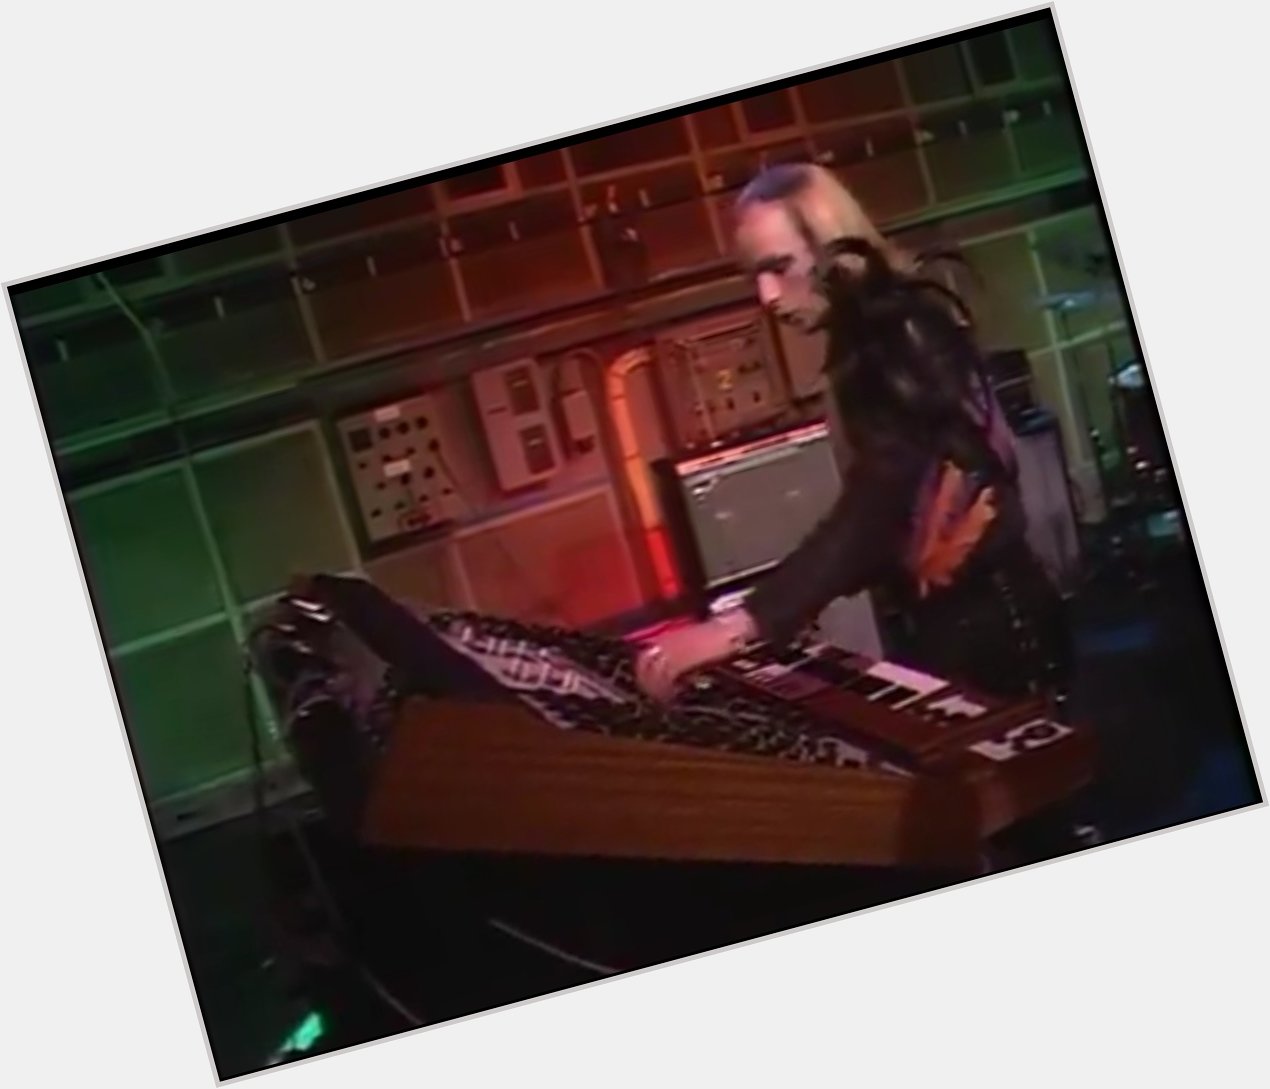 Also happy birthday, Brian Eno. 